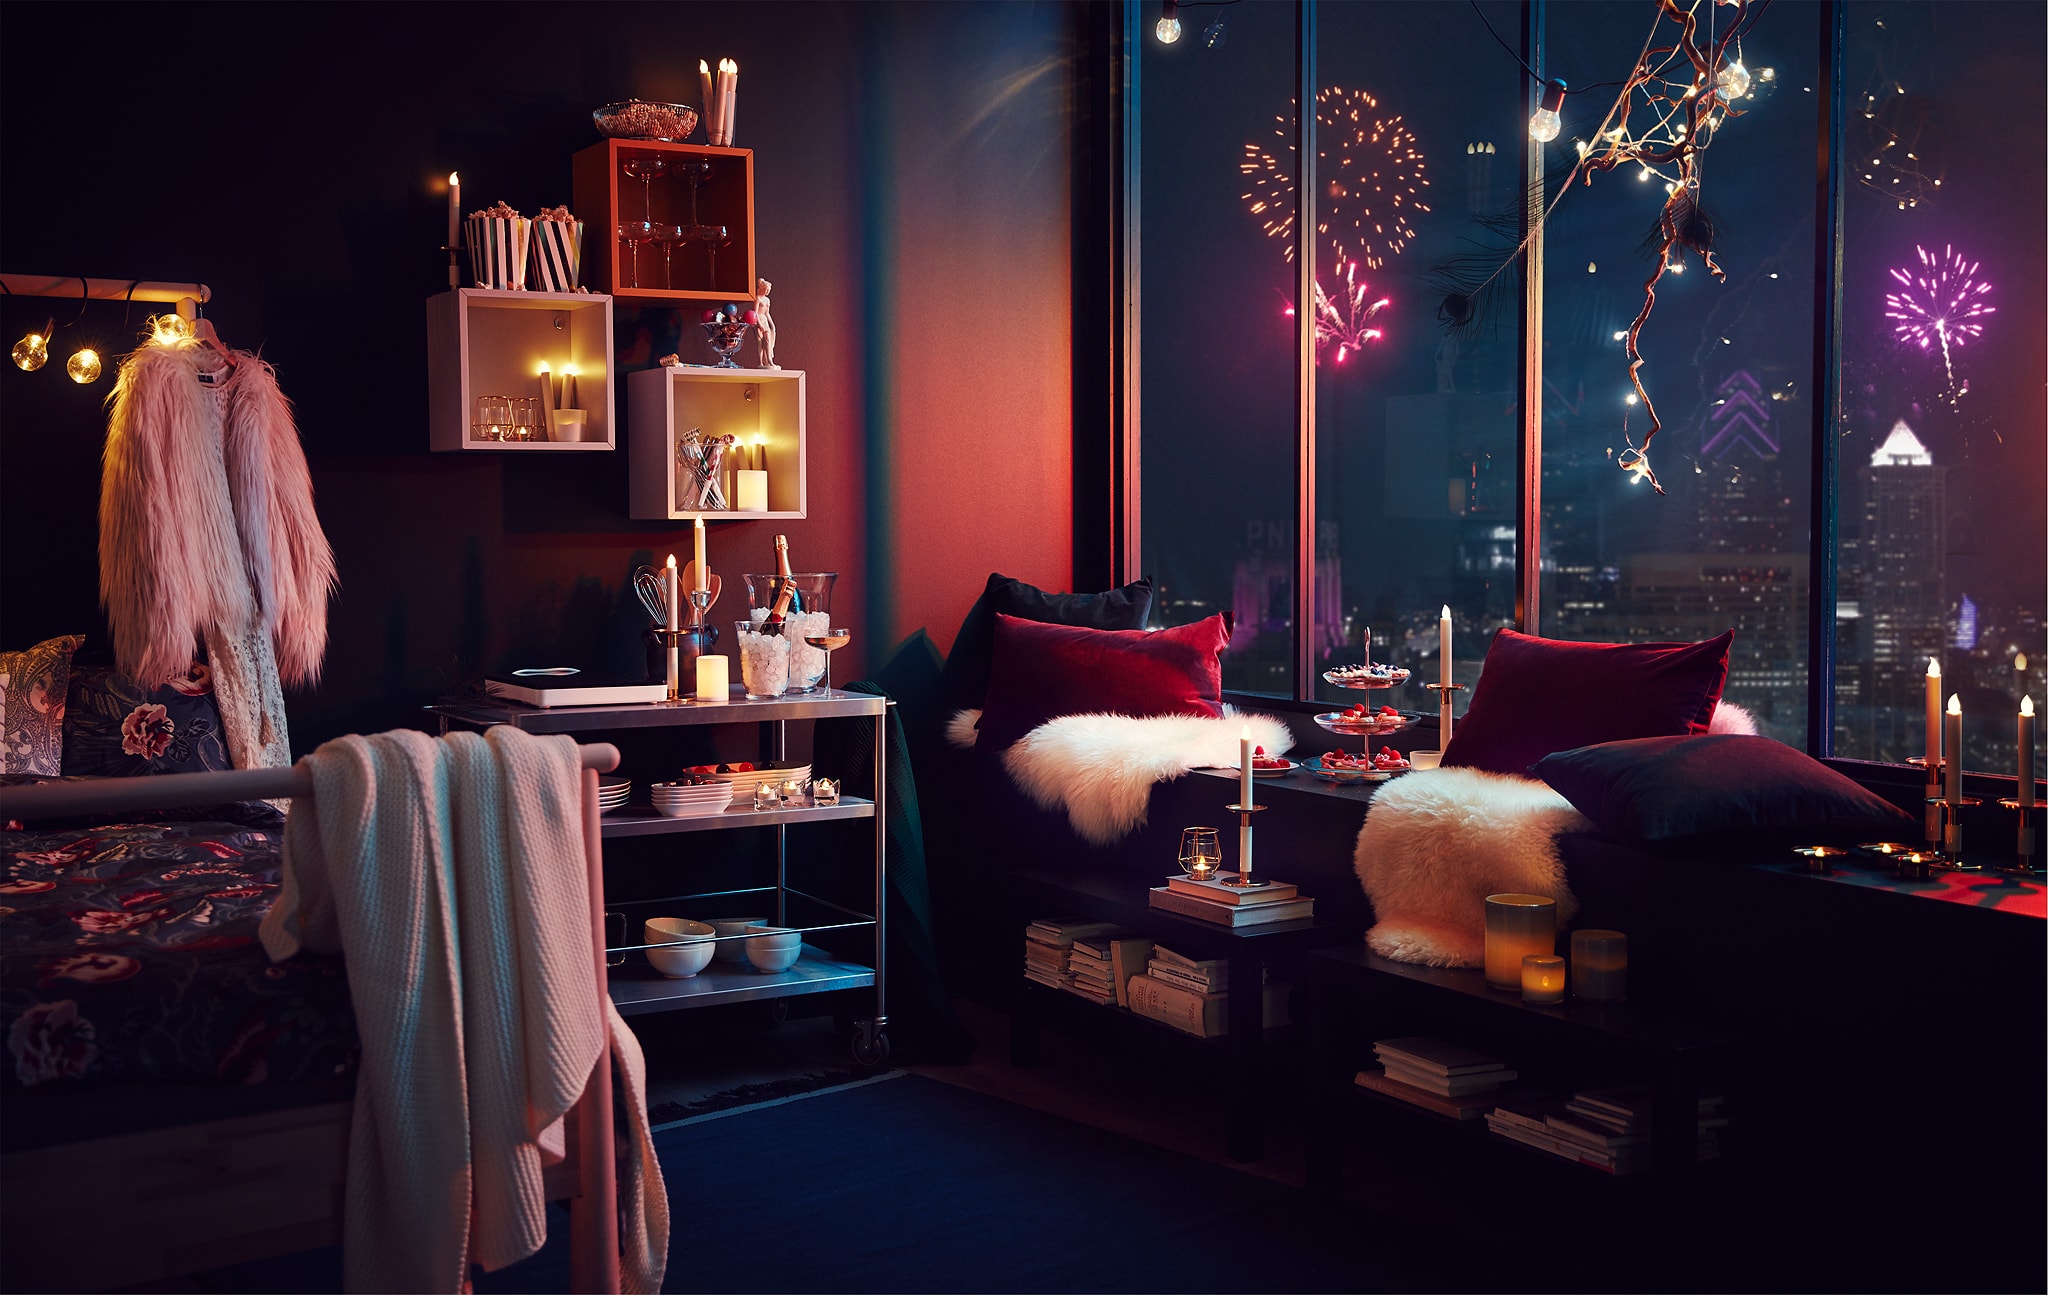 Interior apartemen dengan dekorasi pesta dan lampu; kembang api dari kota terlihat melalui jendela tinggi.